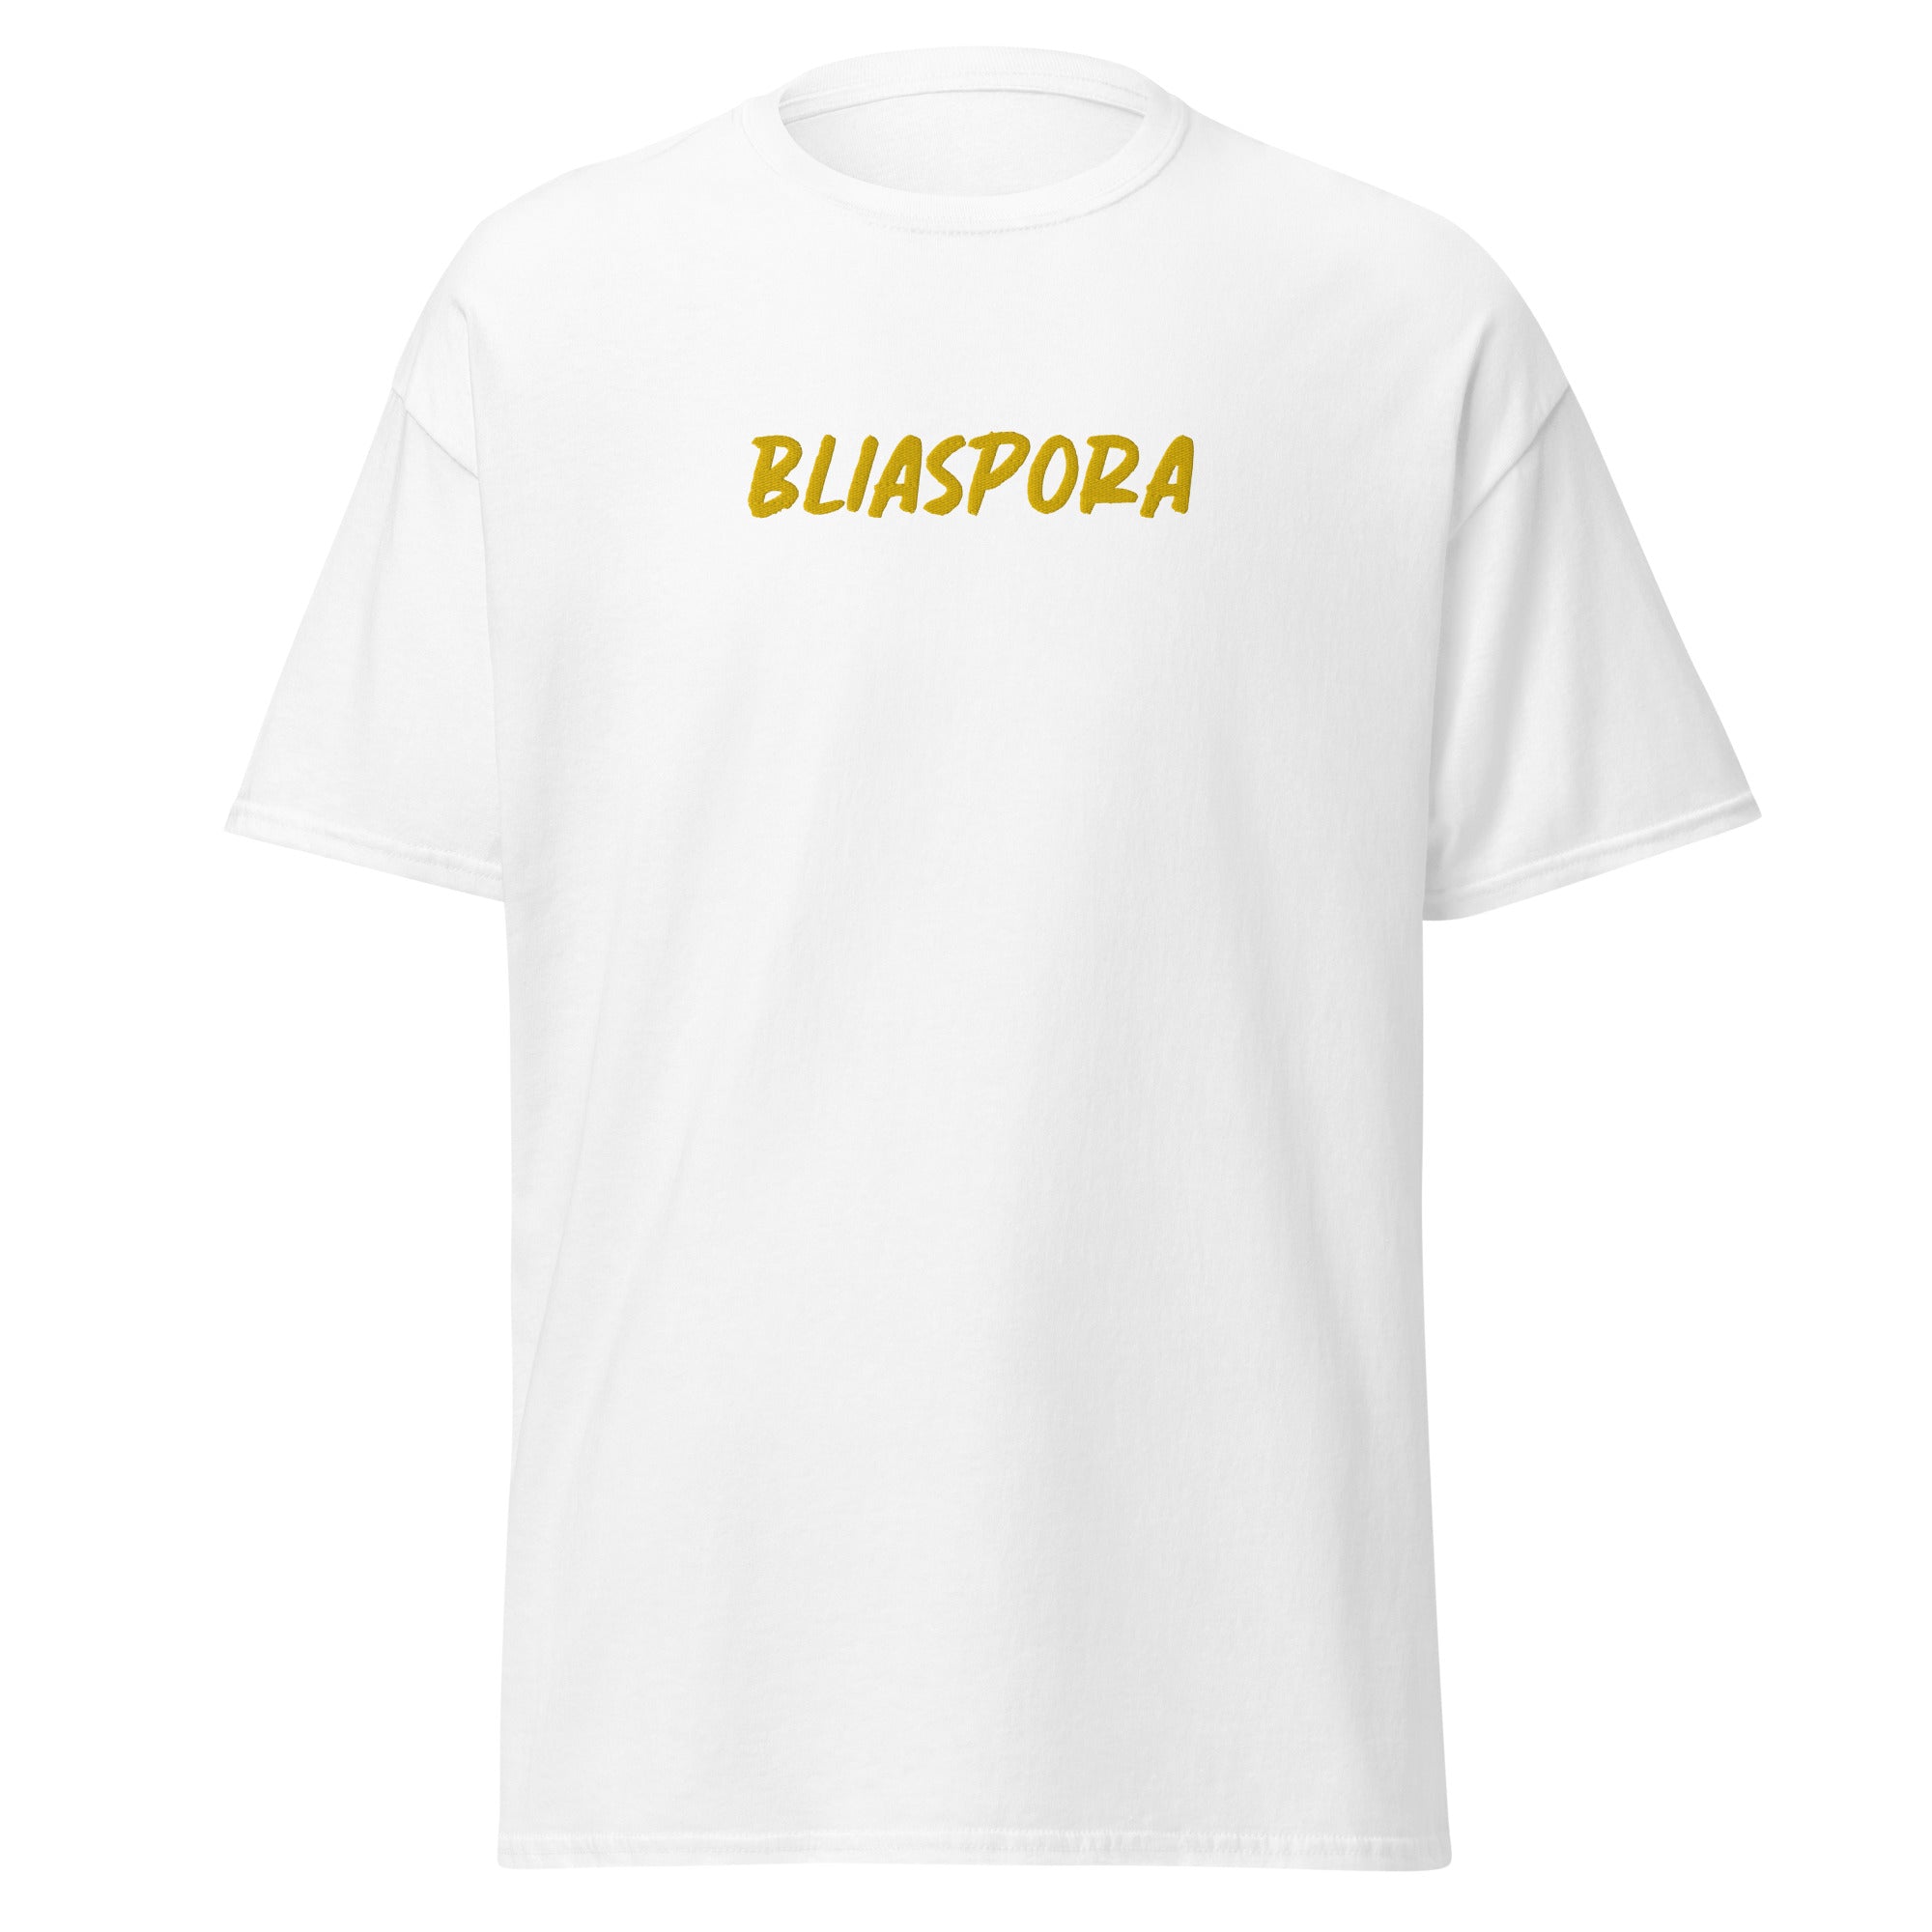 Unisex Bliaspora classic tee